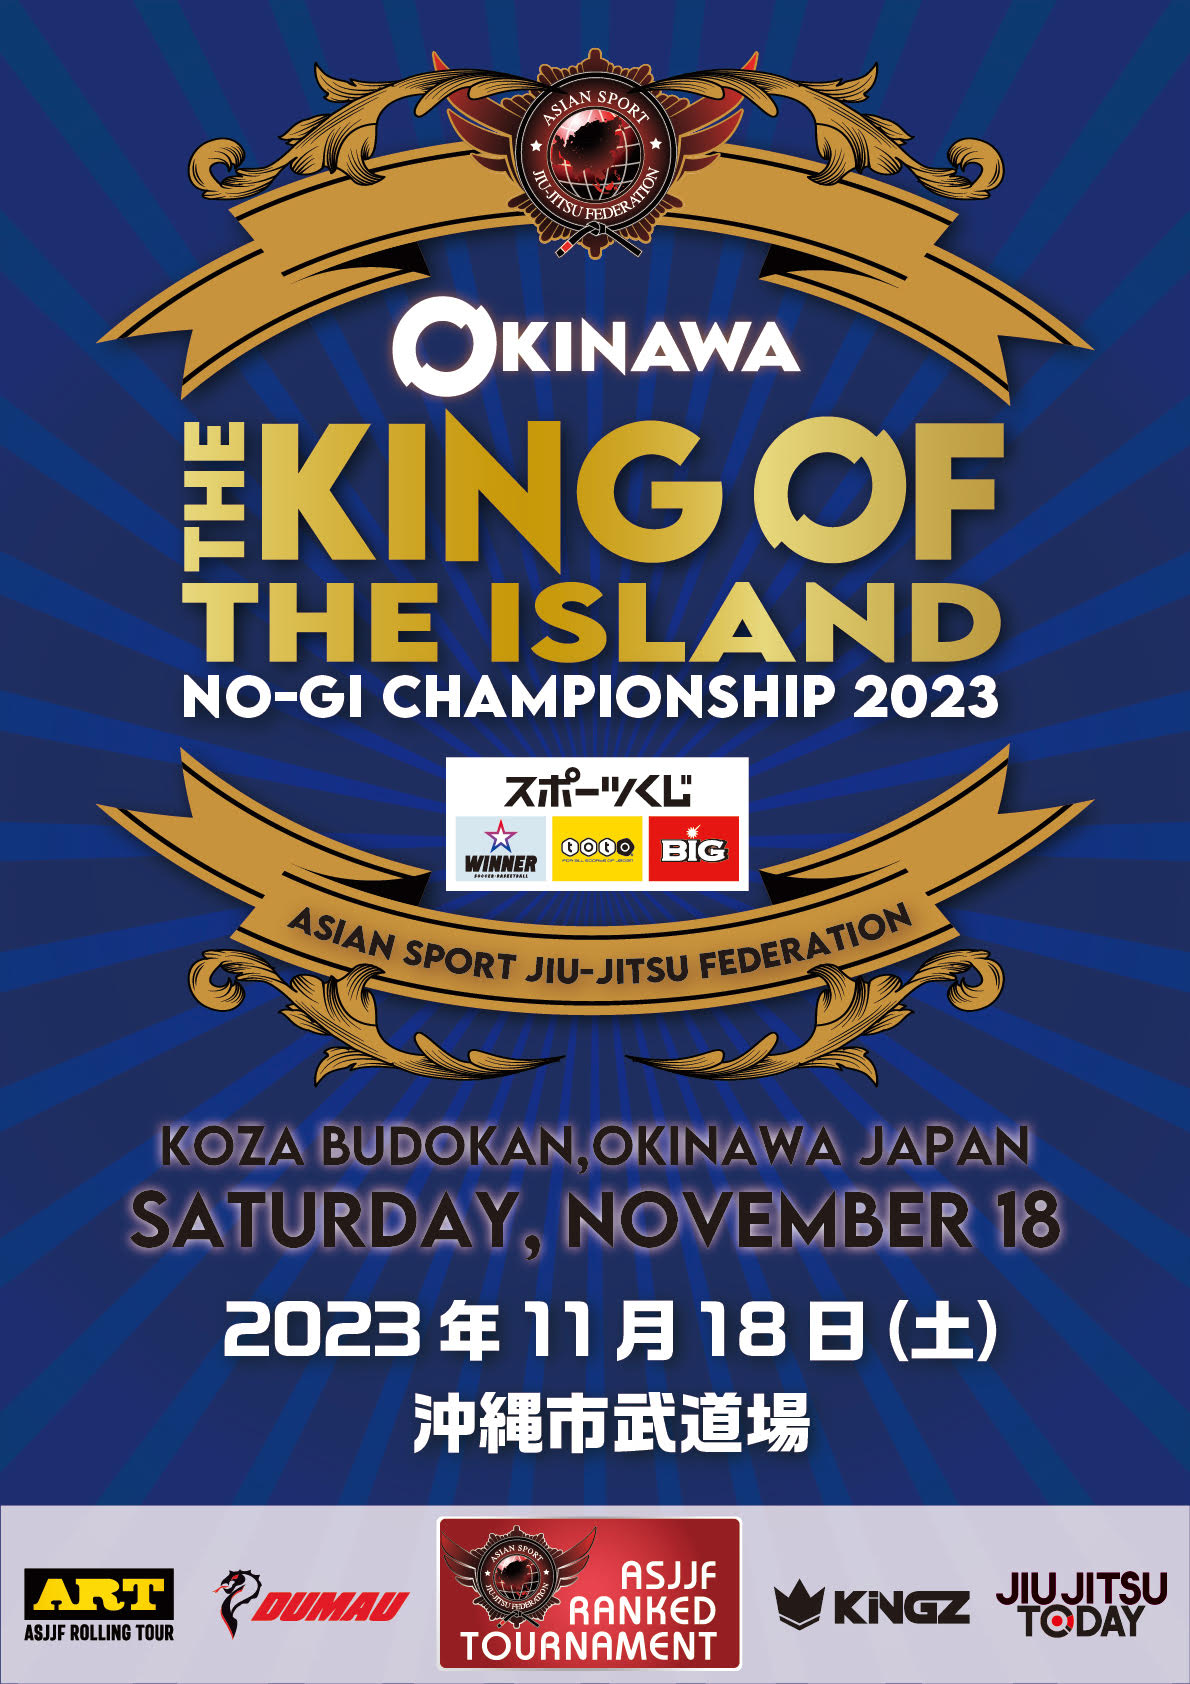 the king of the island no-gi championship 2023